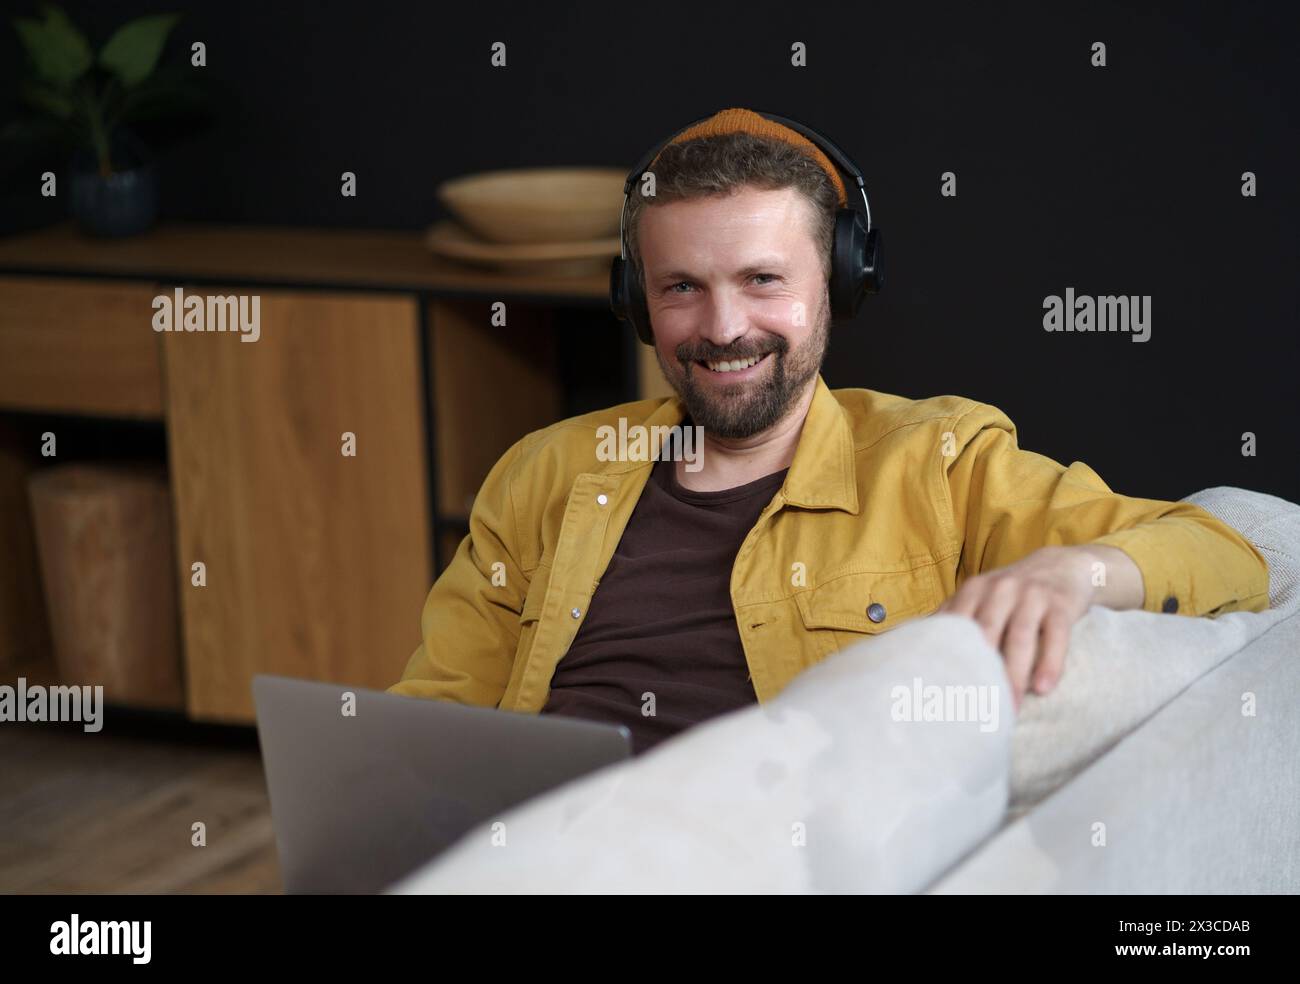 Un uomo che indossa le cuffie e una giacca gialla è seduto su un divano con un portatile davanti a sé. Sta sorridendo e si sta godendo il suo tempo Foto Stock